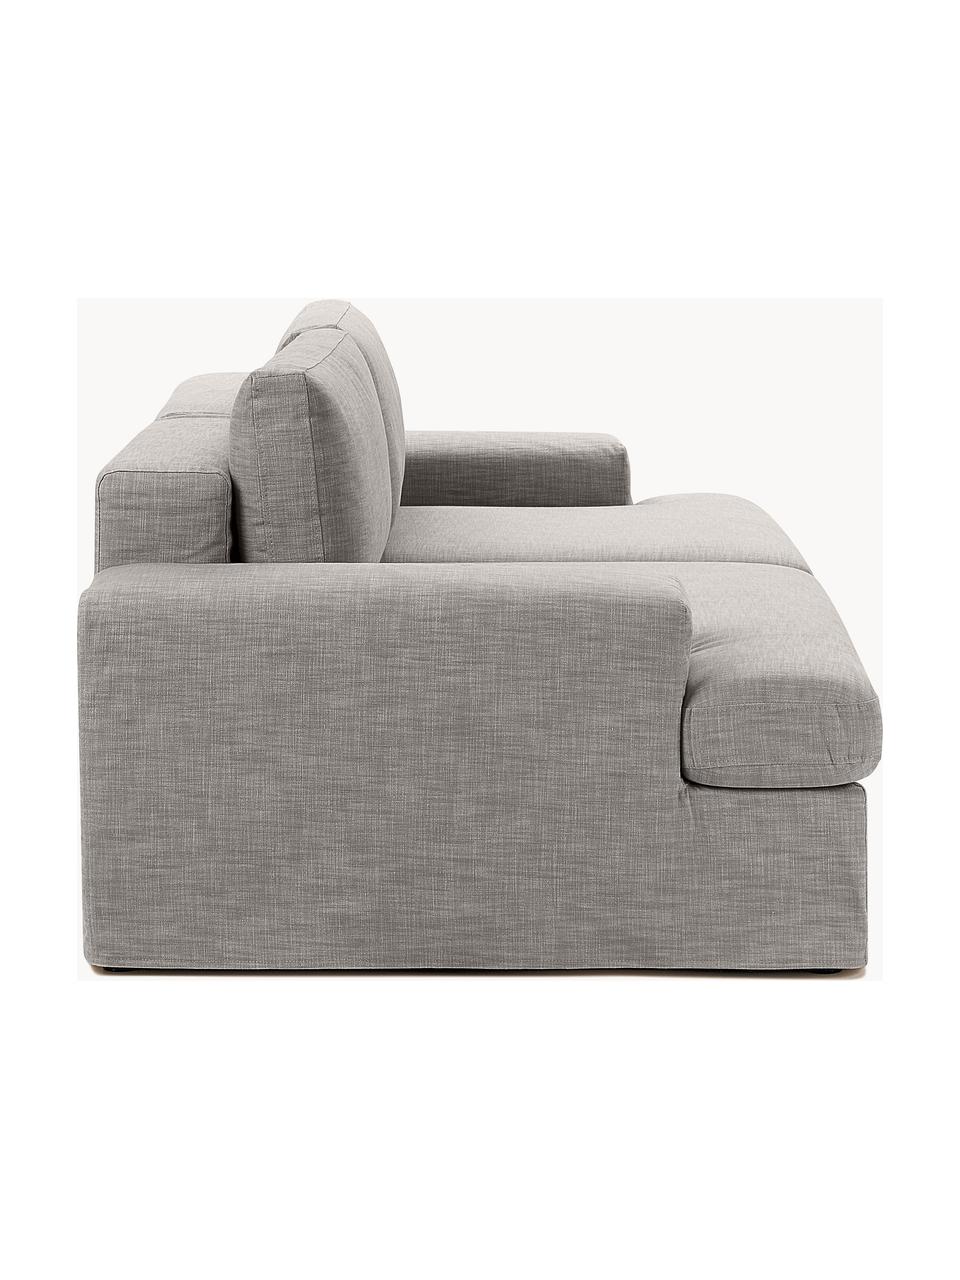 Modulares Sofa Russell (3-Sitzer) mit abnehmbaren Bezügen, Bezug: 100% Baumwolle Der strapa, Gestell: Massives Kiefernholz, Spe, Webstoff Grau, B 206 x T 103 cm